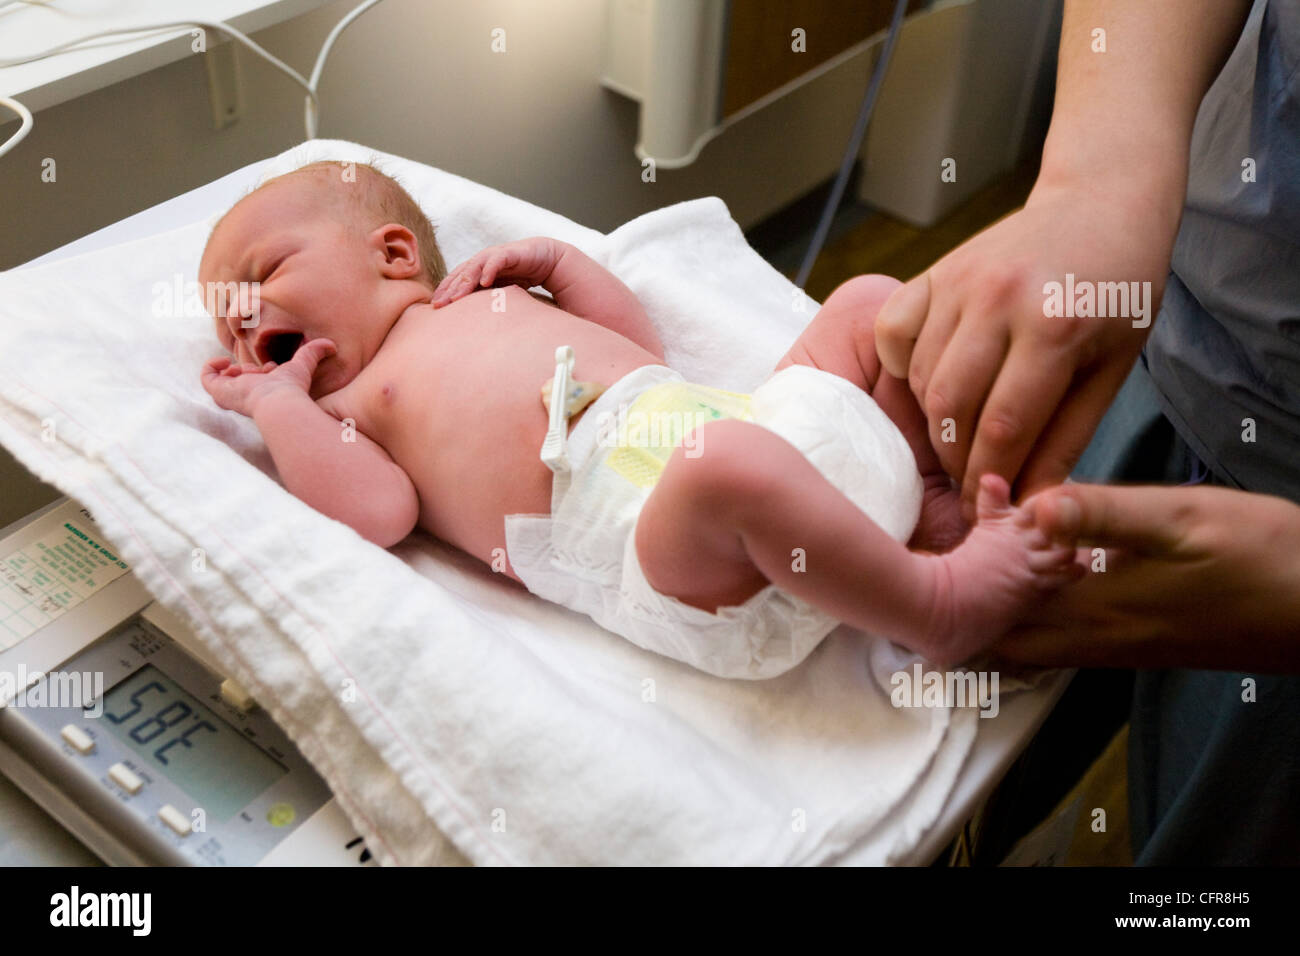 Die Hebamme Hände führen körperliche Untersuchung Gesundheit check testen auf Neugeborene / new born Baby nach der Geburt / Wiedergeburt UK Stockfoto